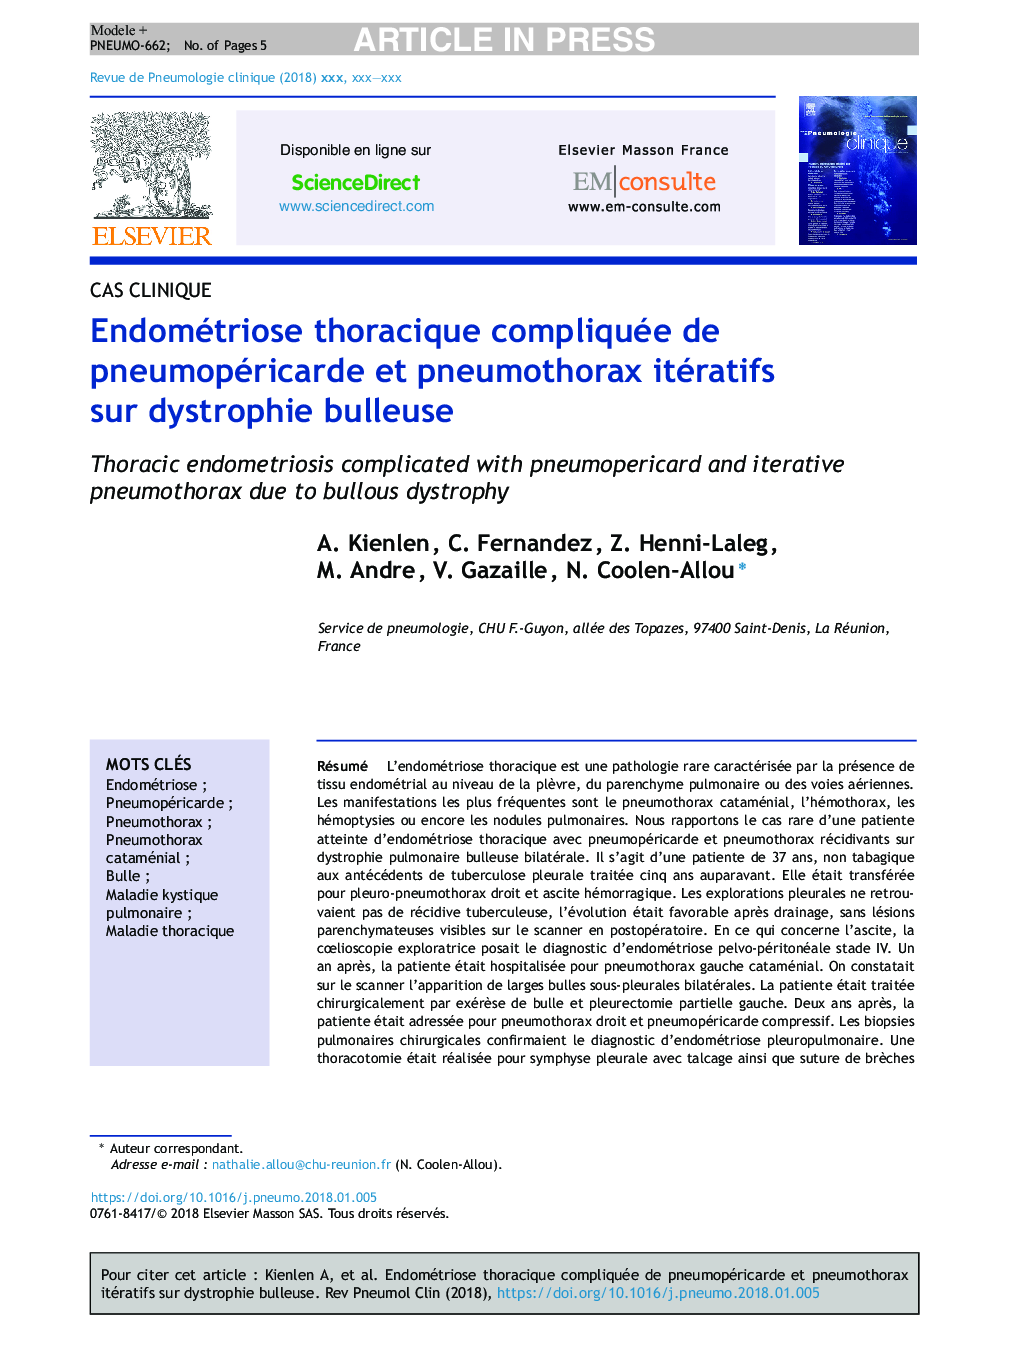 Endométriose thoracique compliquée de pneumopéricarde et pneumothorax itératifs sur dystrophie bulleuse